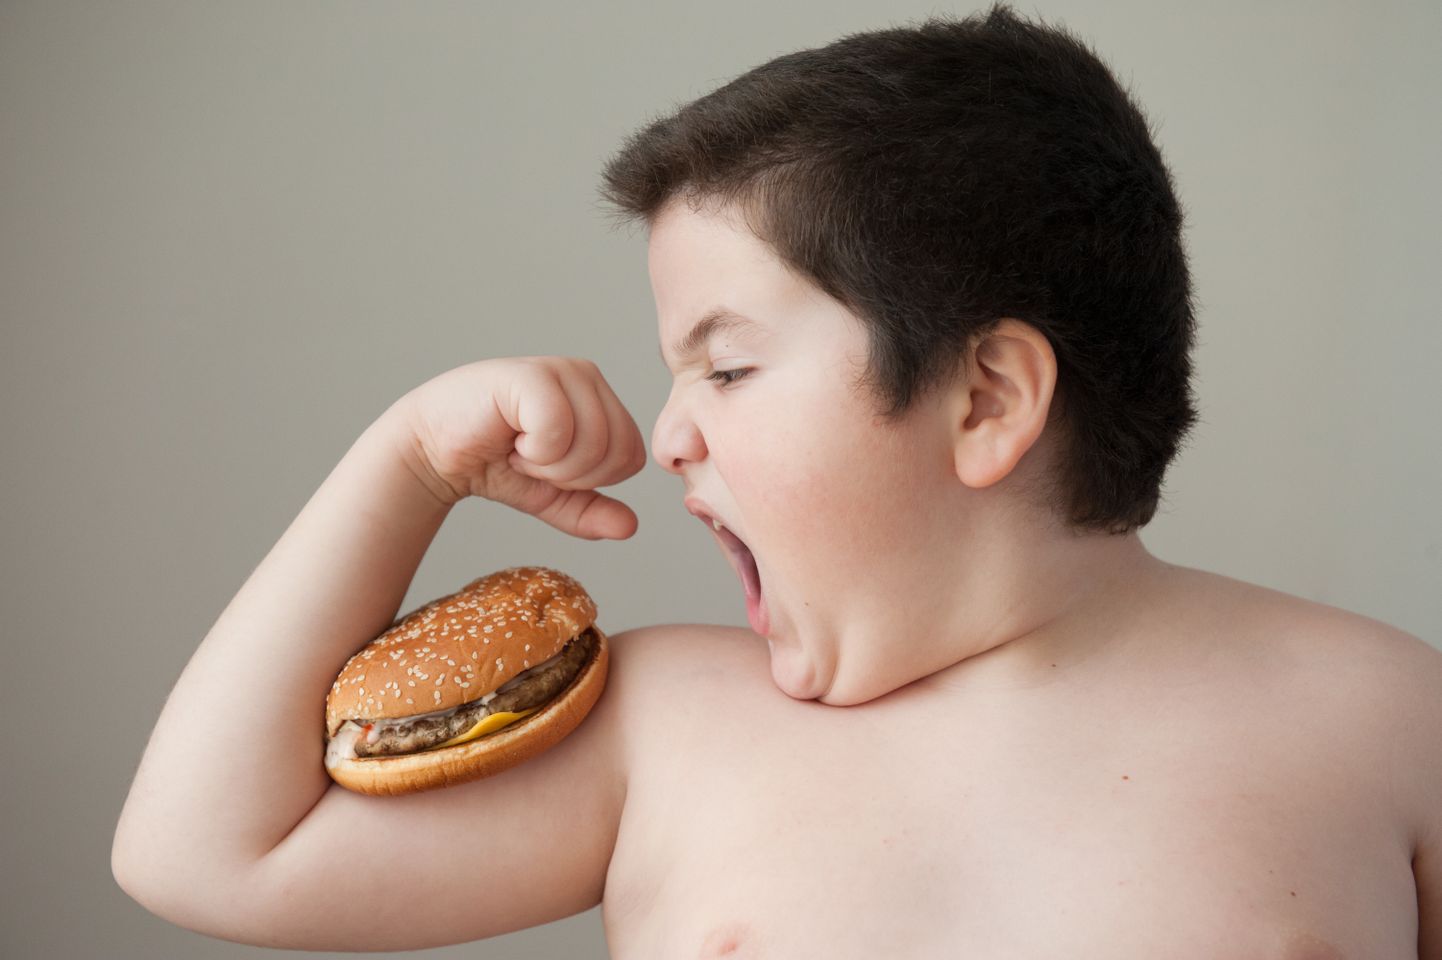 Lapseea ülekaalulisust on seostatud sealhulgas II tüüpi diabeedi, kõrgvererõhutõve, uneapnoeg, depressioon, kehataju muutumise ja madala enesehinnanguga.